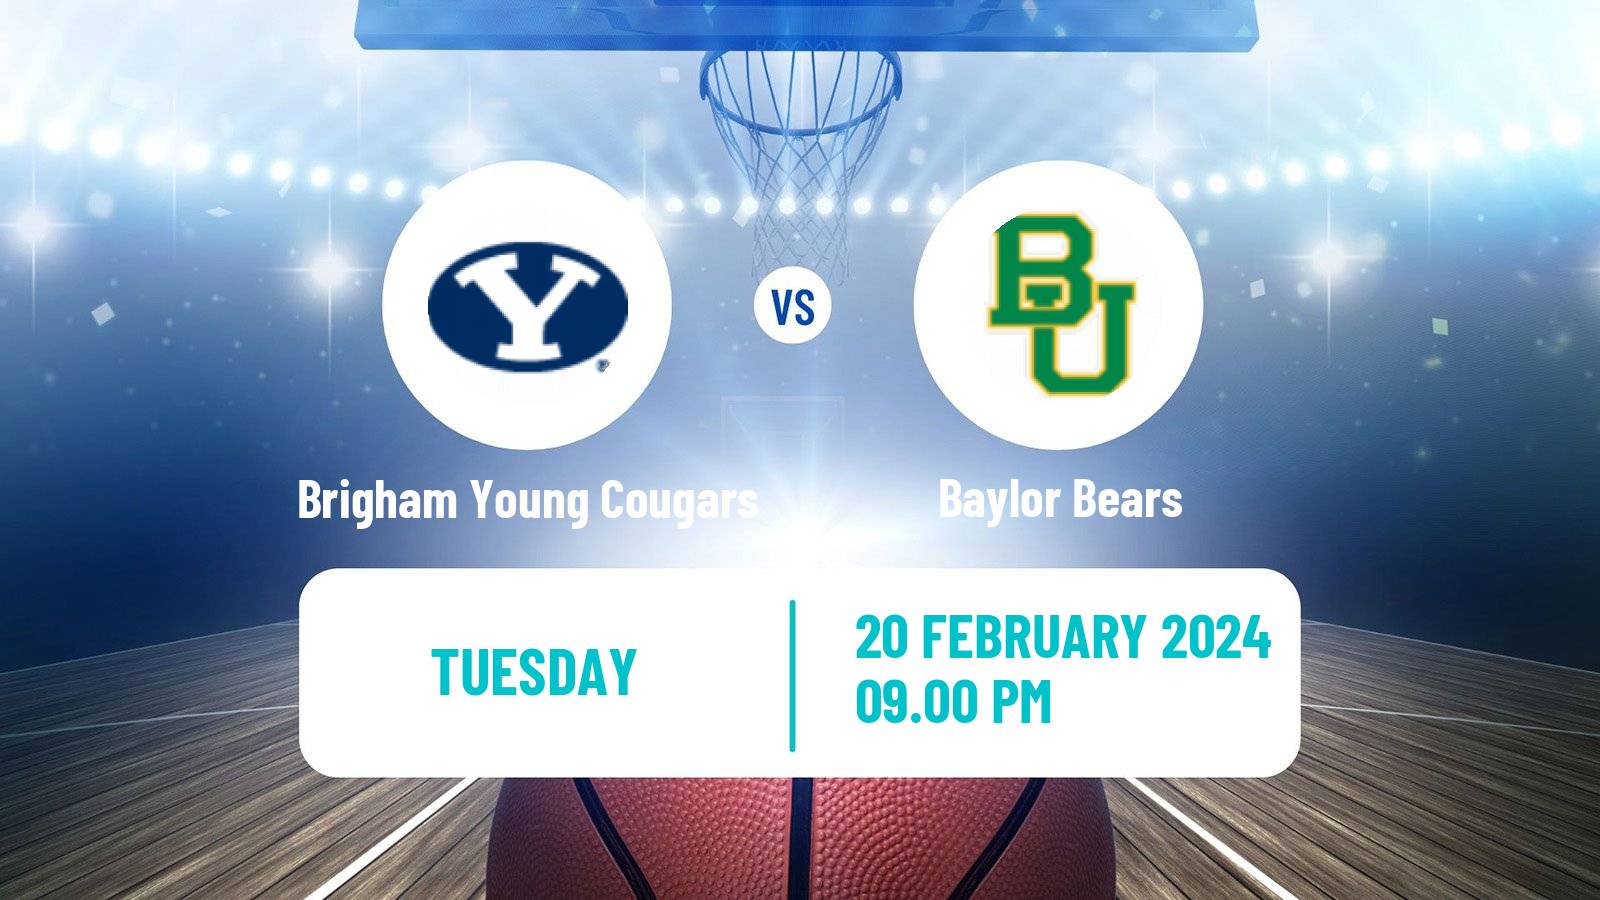 Basketball NCAA College Basketball Brigham Young Cougars - Baylor Bears